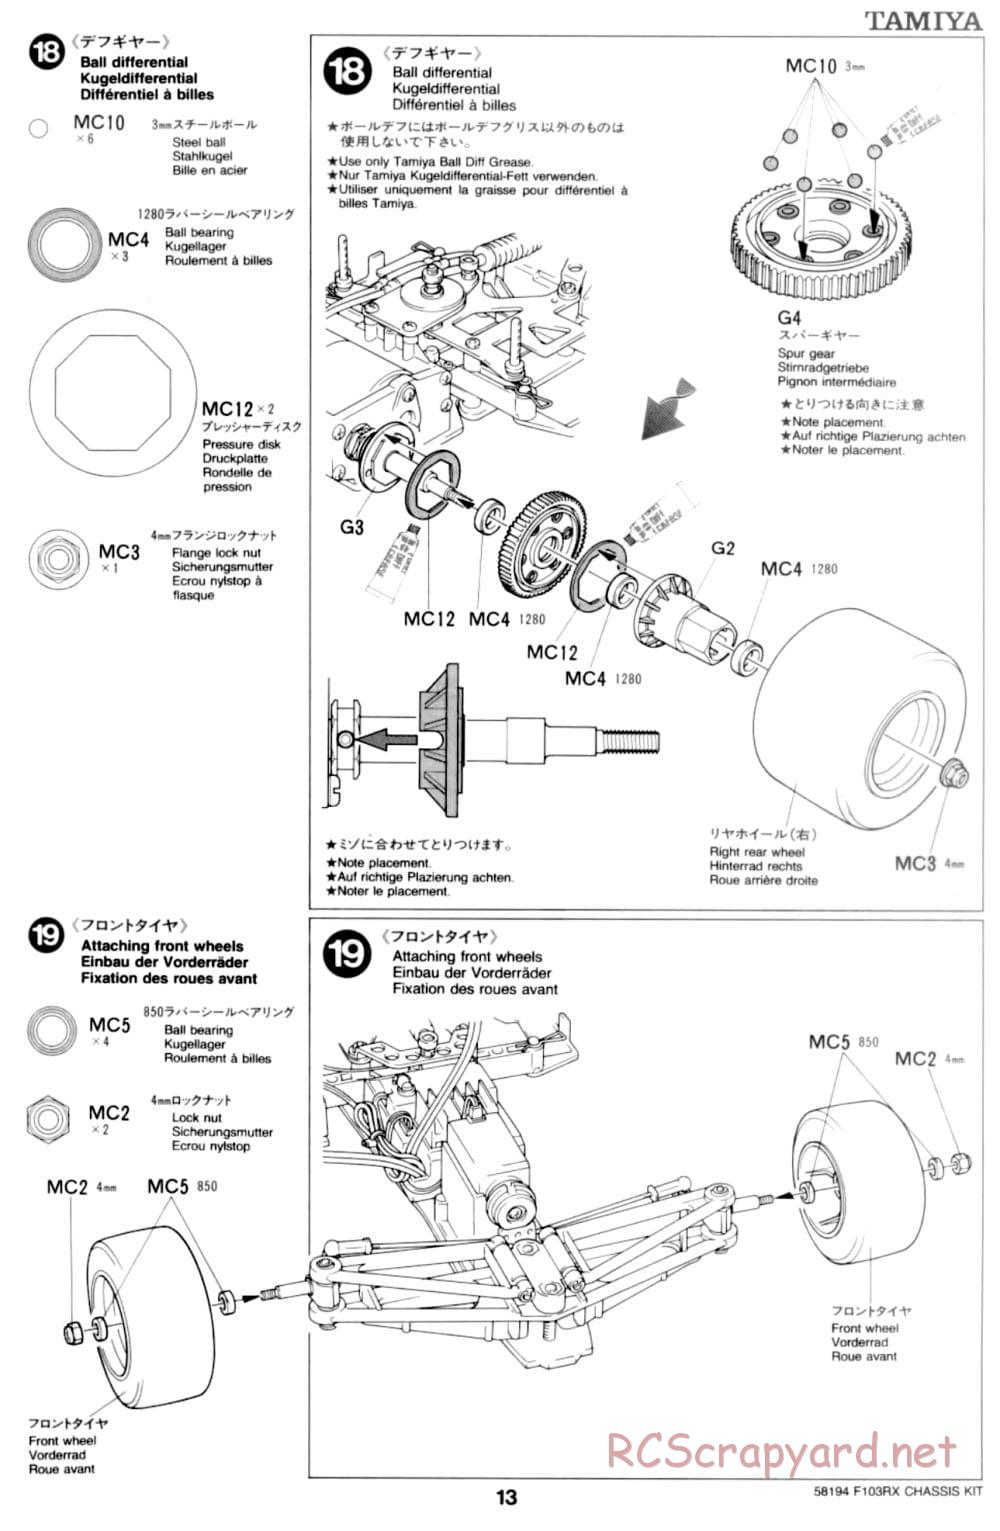 Tamiya - F103RX Chassis - Manual - Page 13